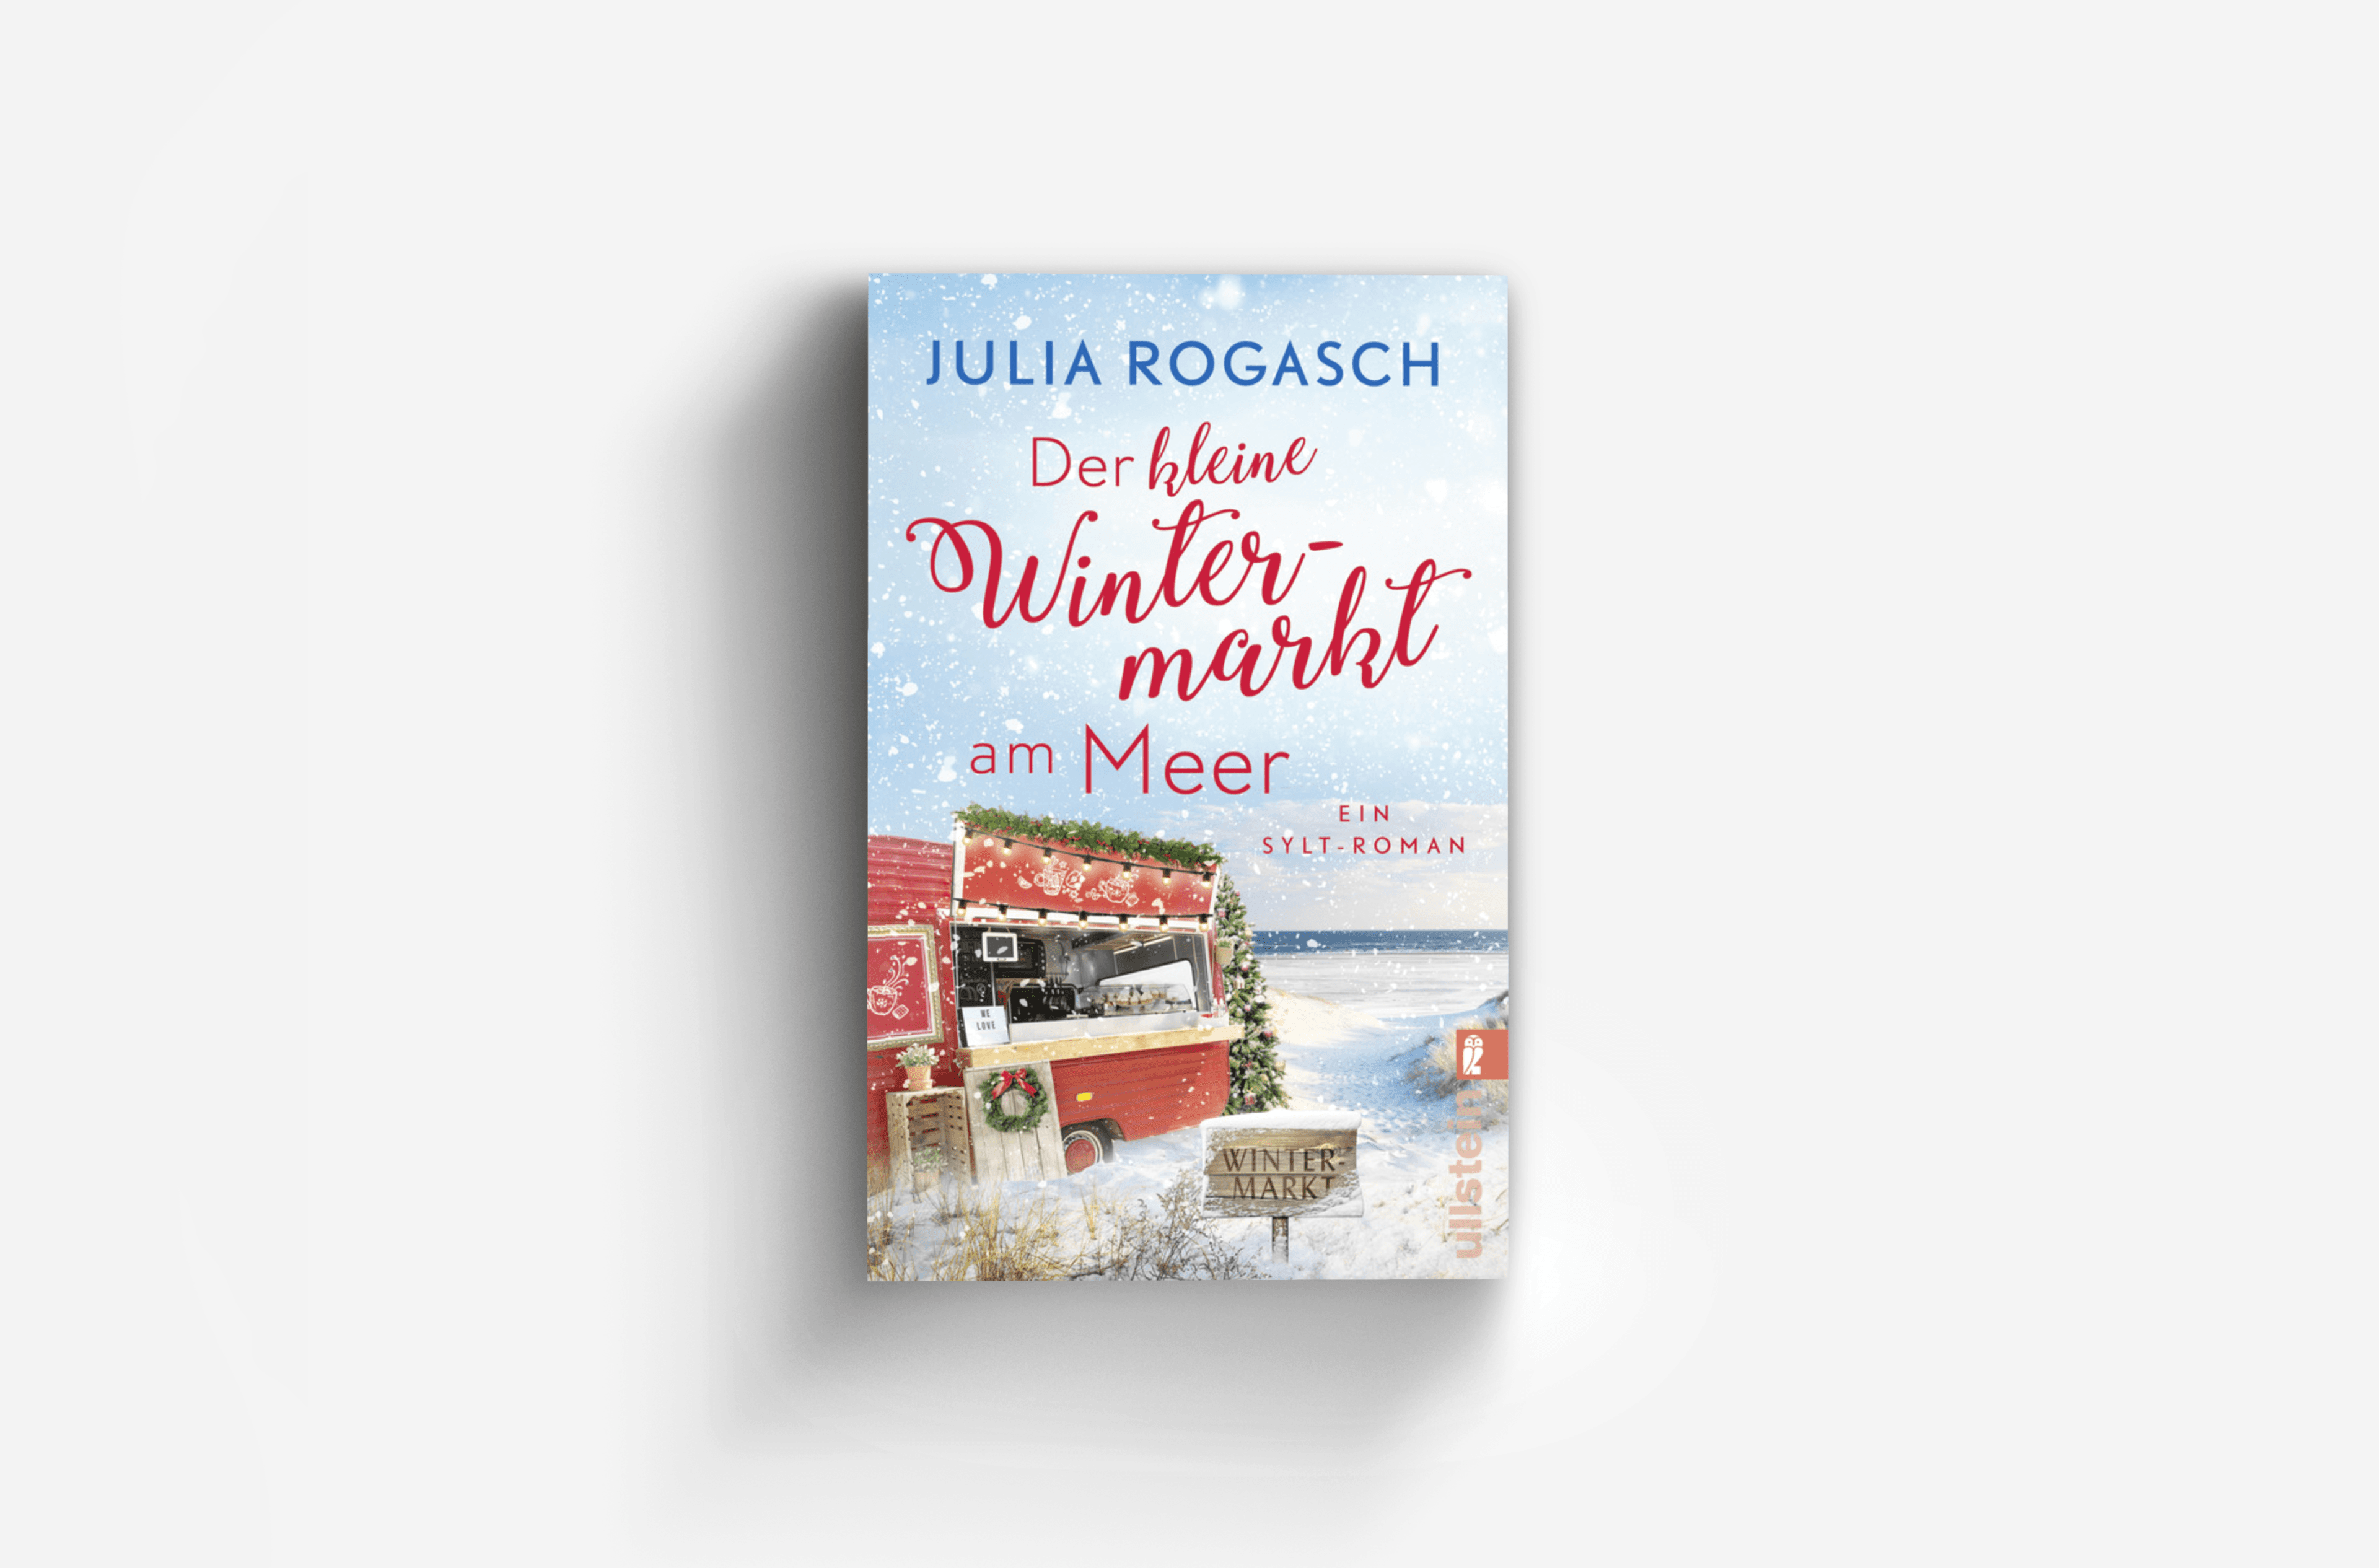 Buchcover von Der kleine Wintermarkt am Meer (Winterzauber auf Sylt)